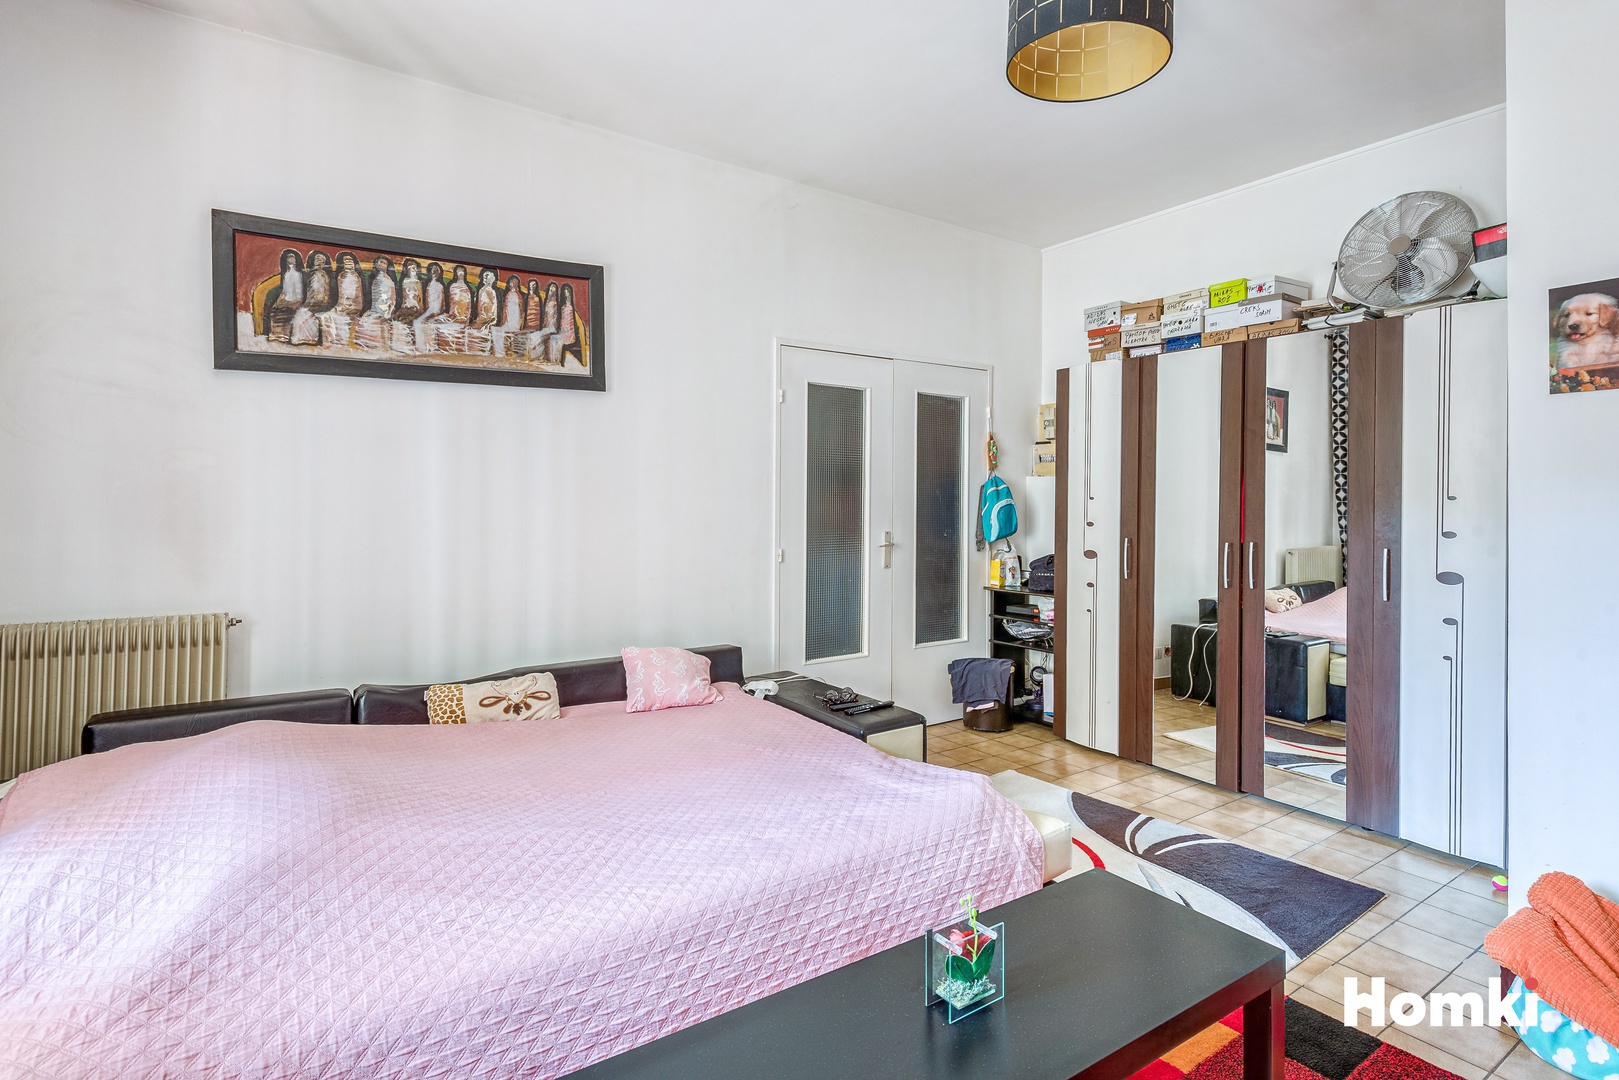 Homki - Vente Appartement  de 50.0 m² à Marseille 13004